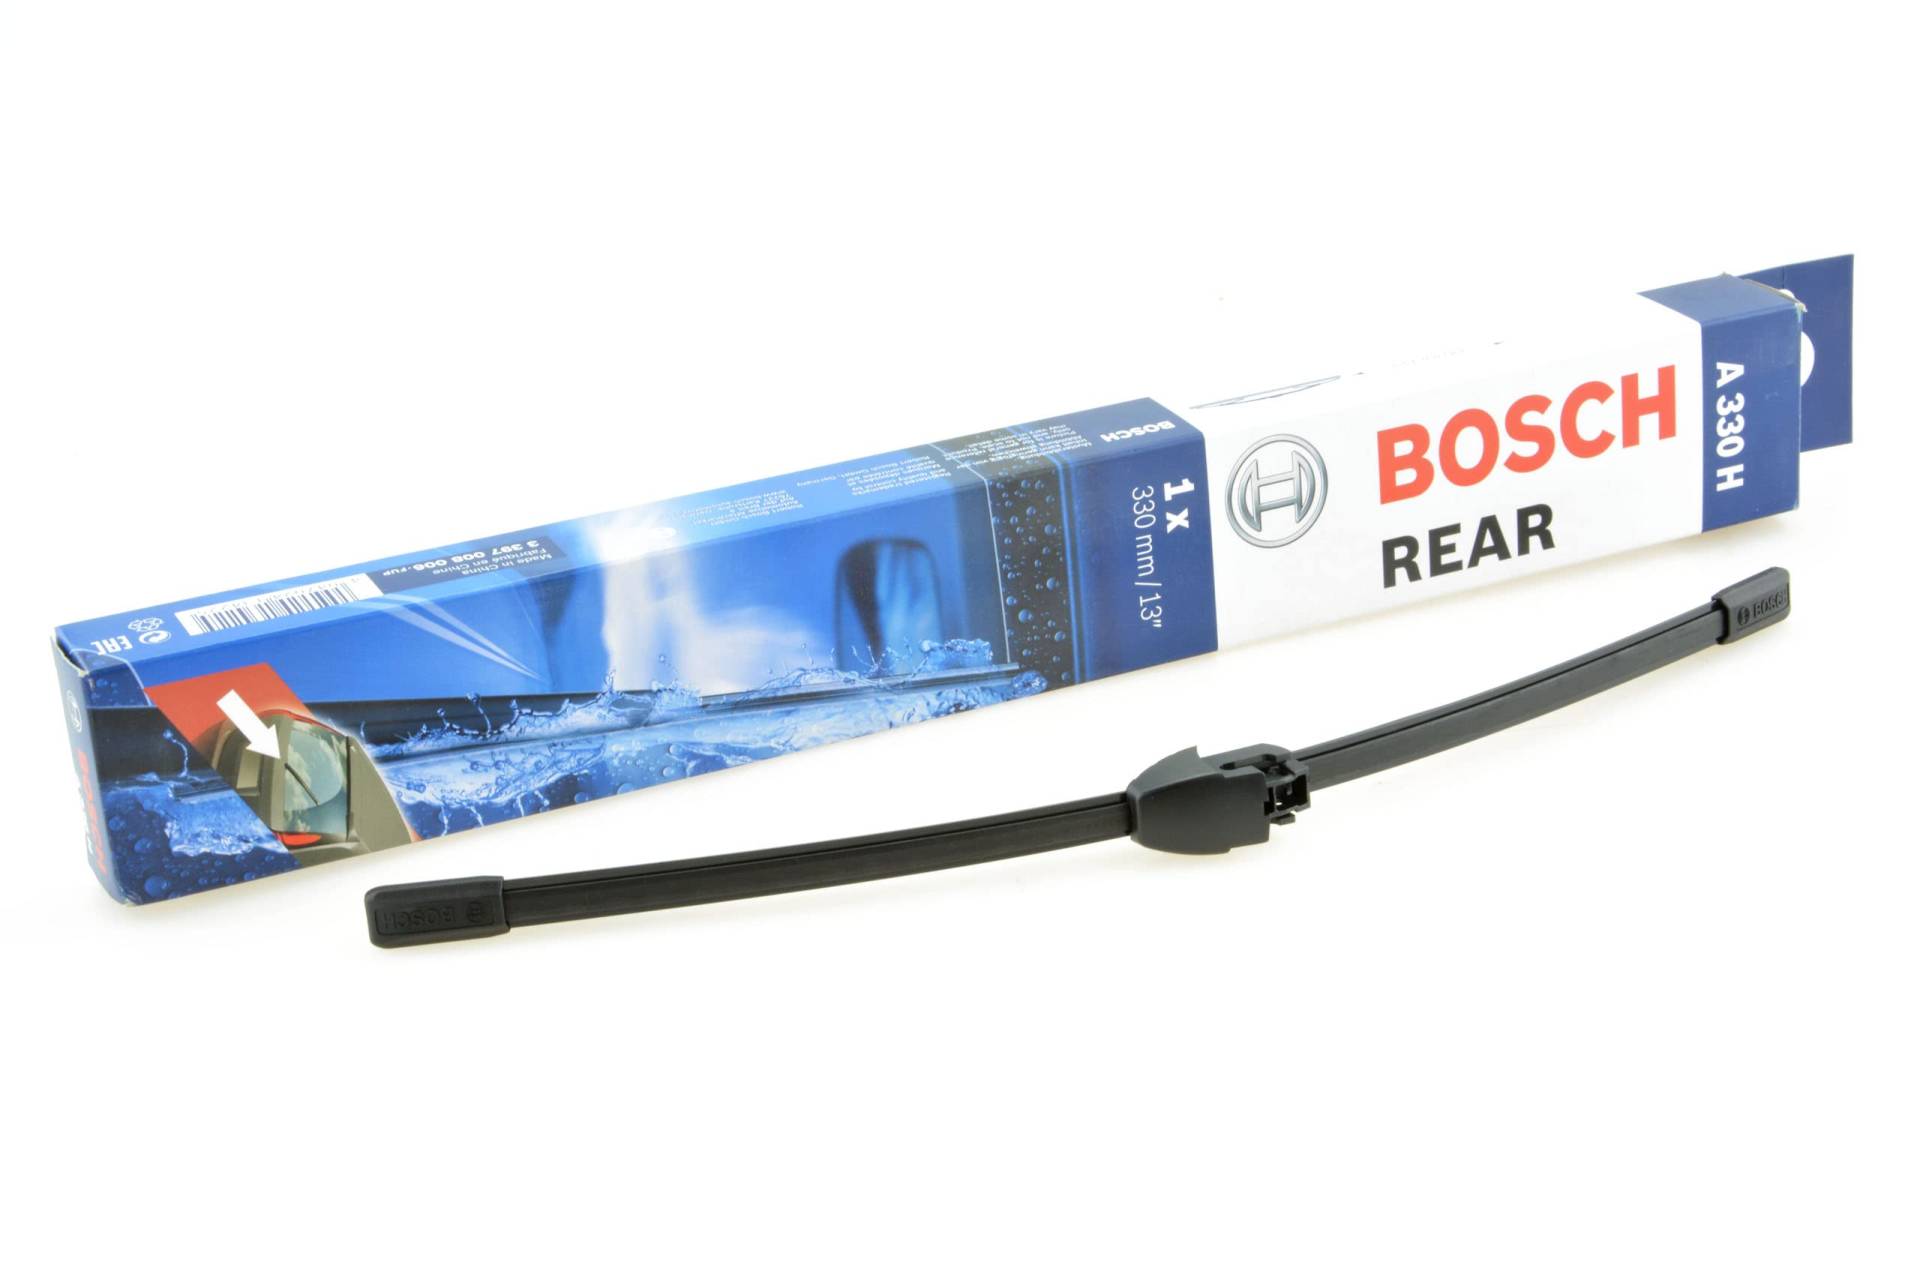 Scheibenwischer für Heckscheibe kompatibel mit VW Polo 9N 2002-2009 ideal angepasst Bosch TWIN von Bosch Professional